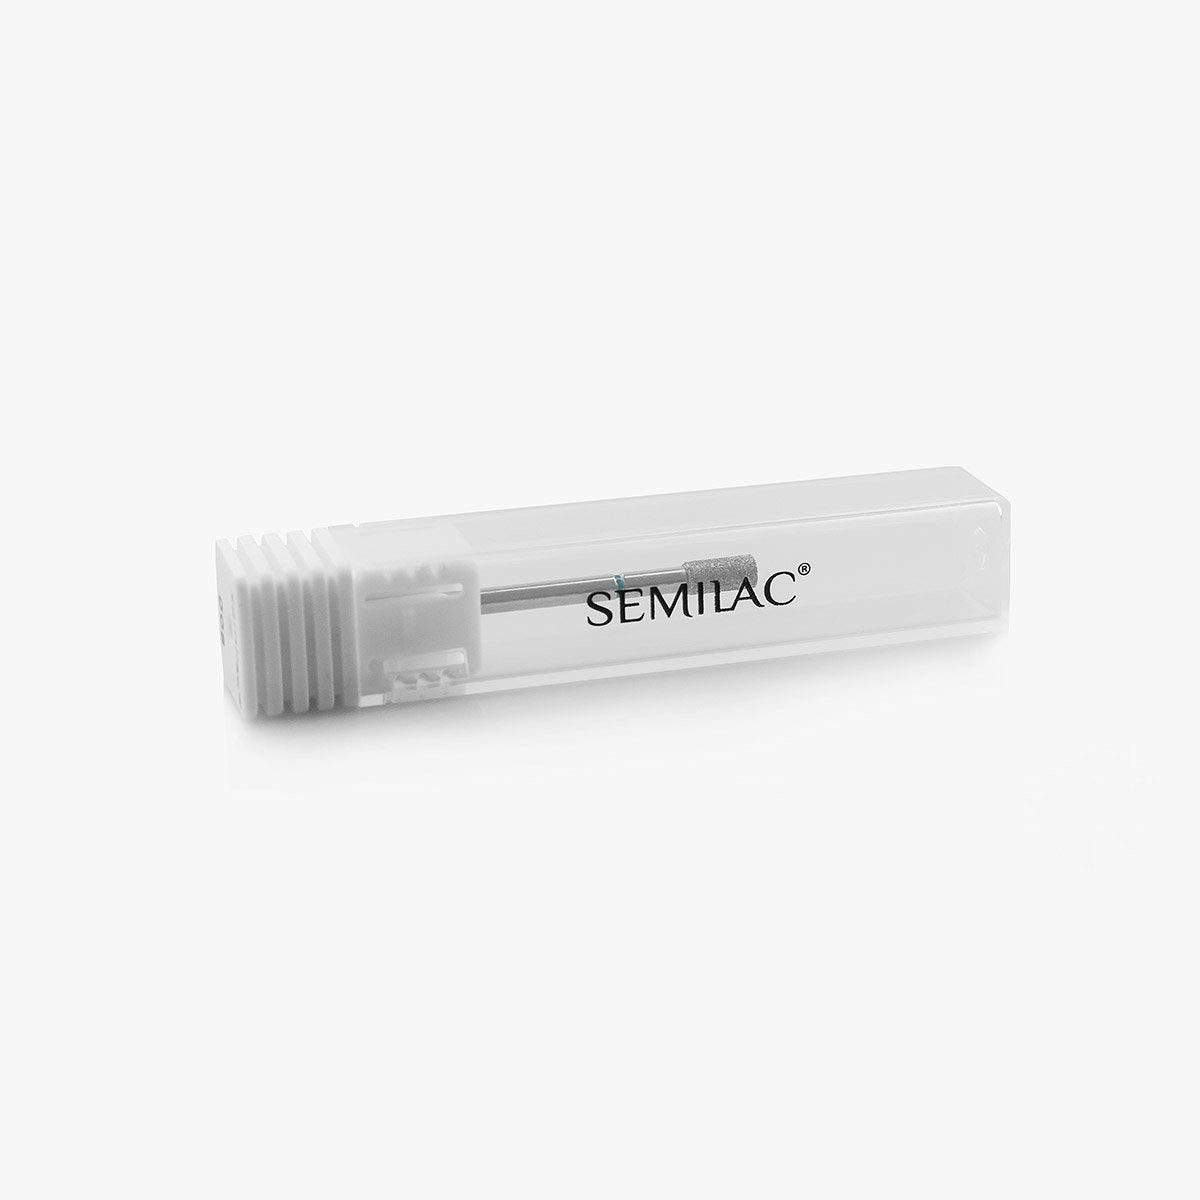 Semilac drill bit 008 - Diamond Micro Barrel-Nail Art-Semilac-NR Kosmetik